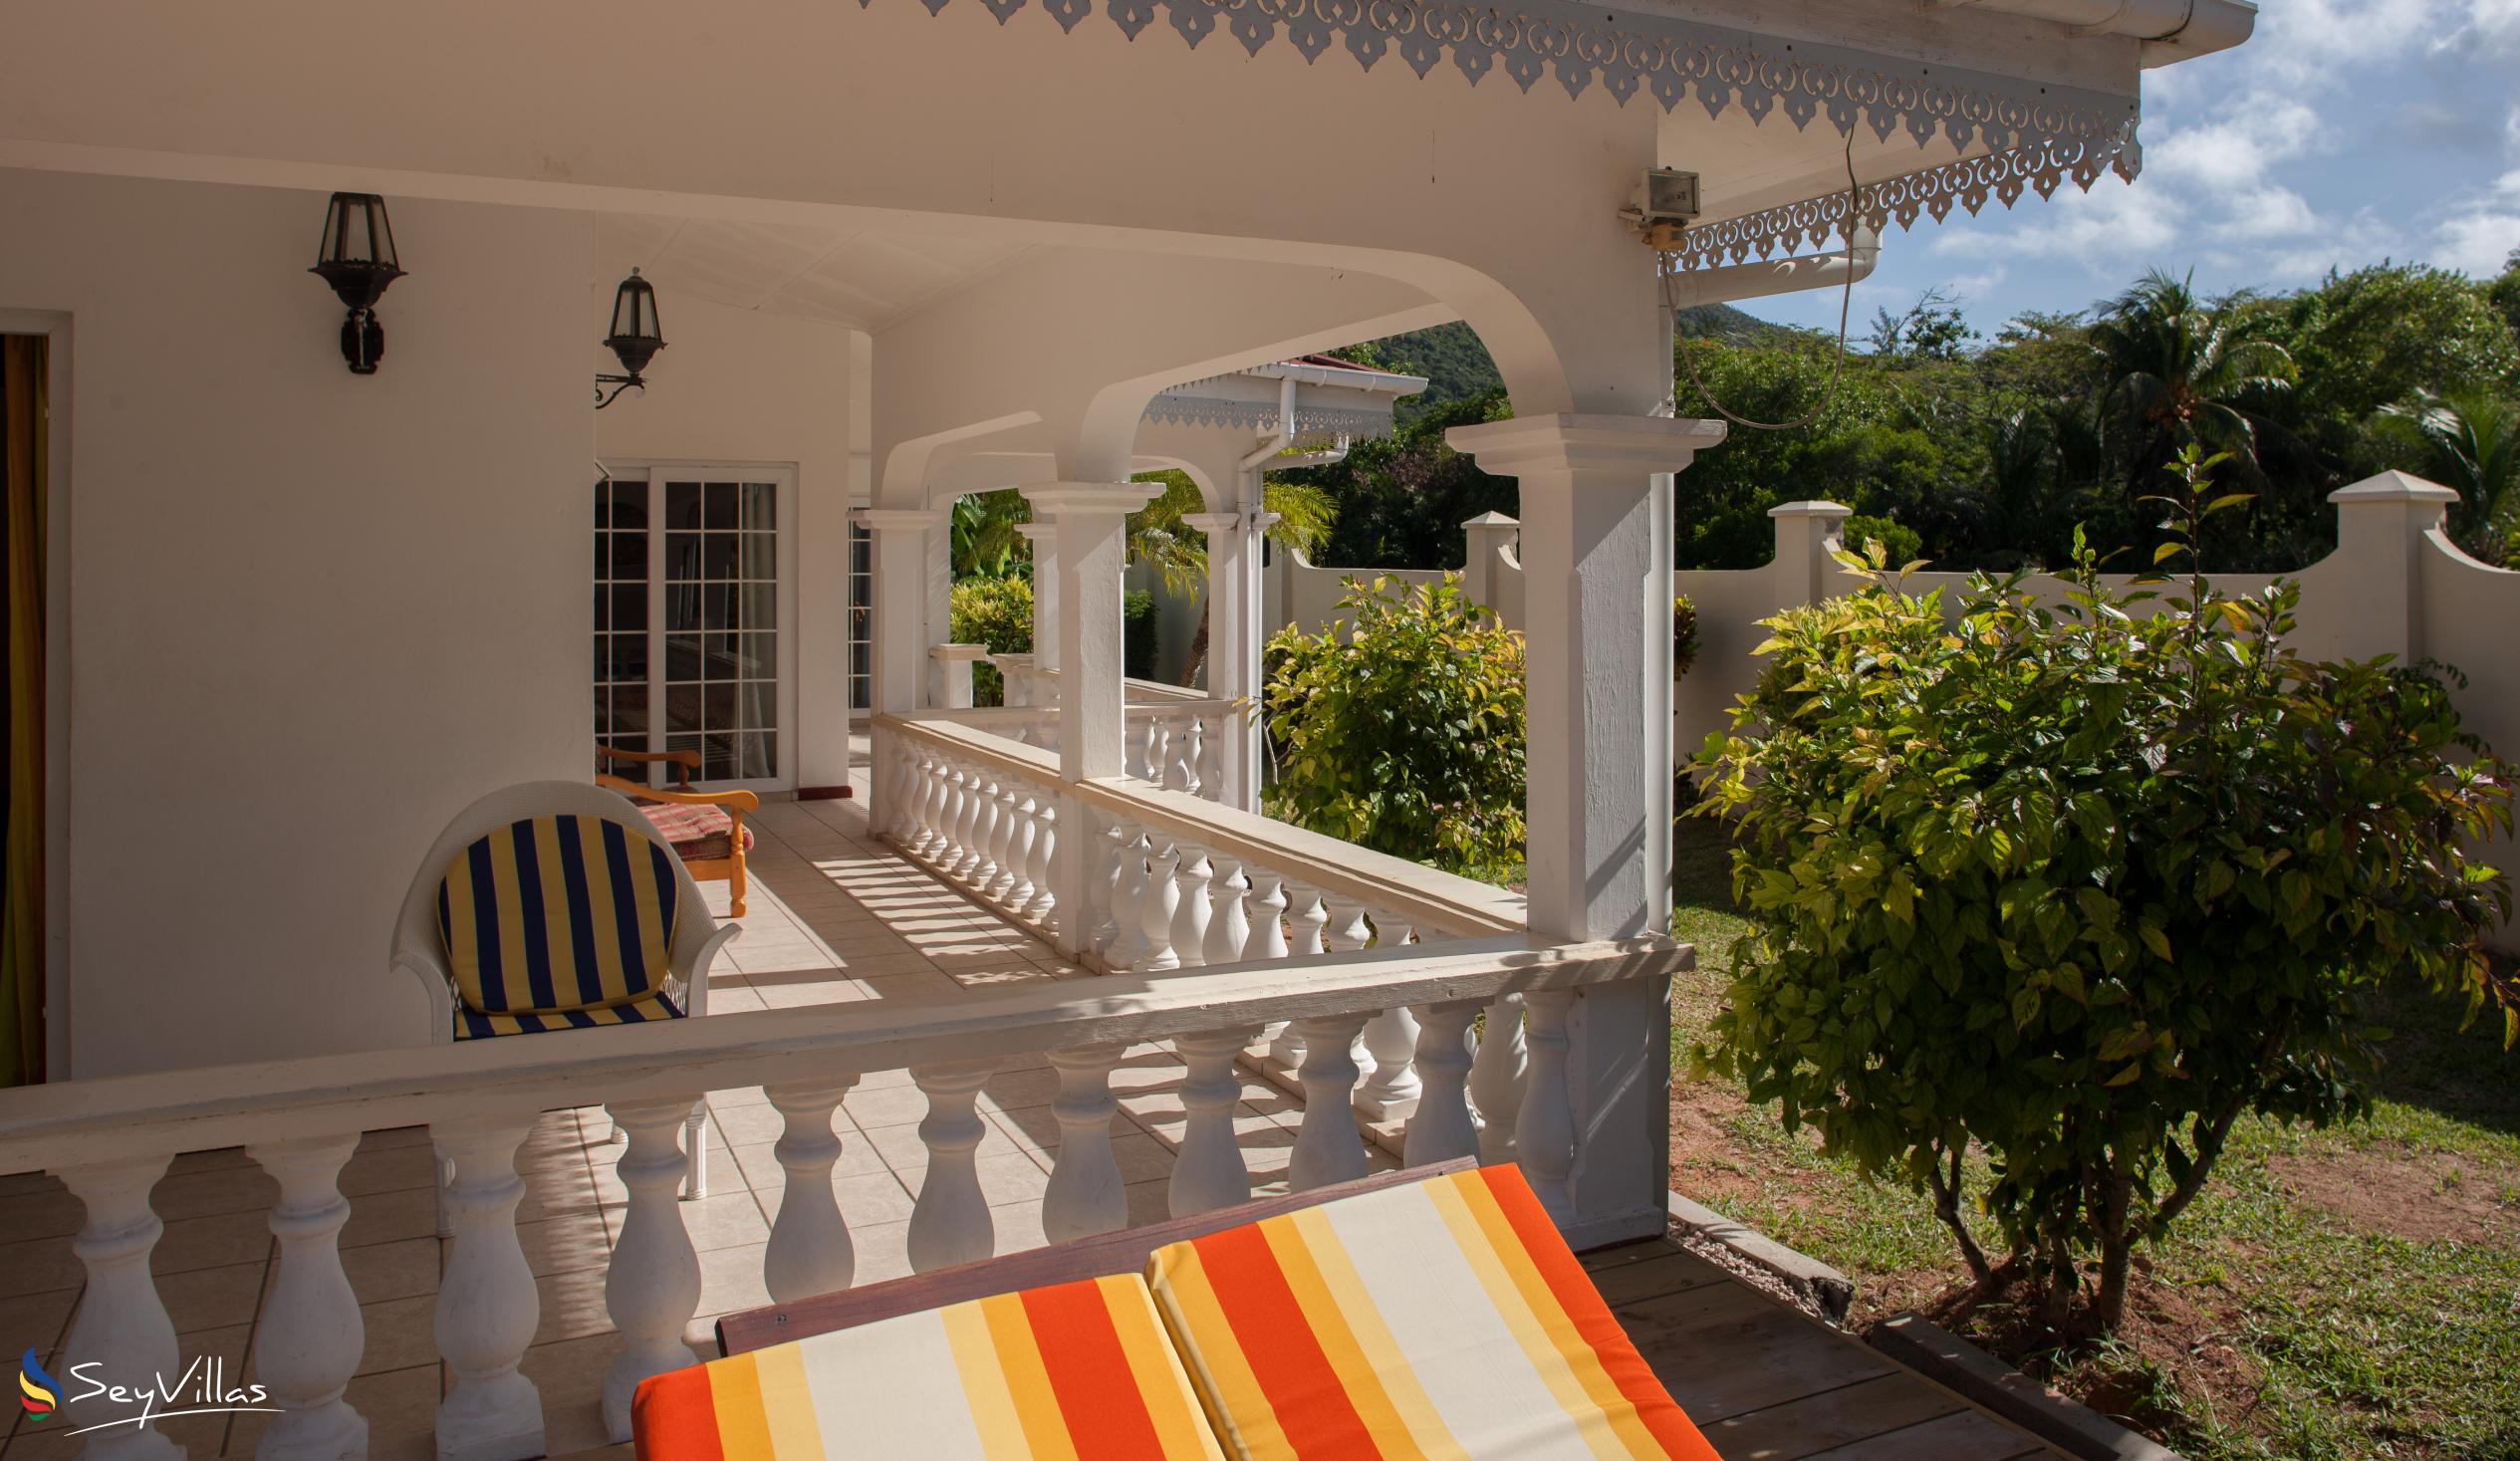 Photo 8: Villa Confort - Outdoor area - Praslin (Seychelles)